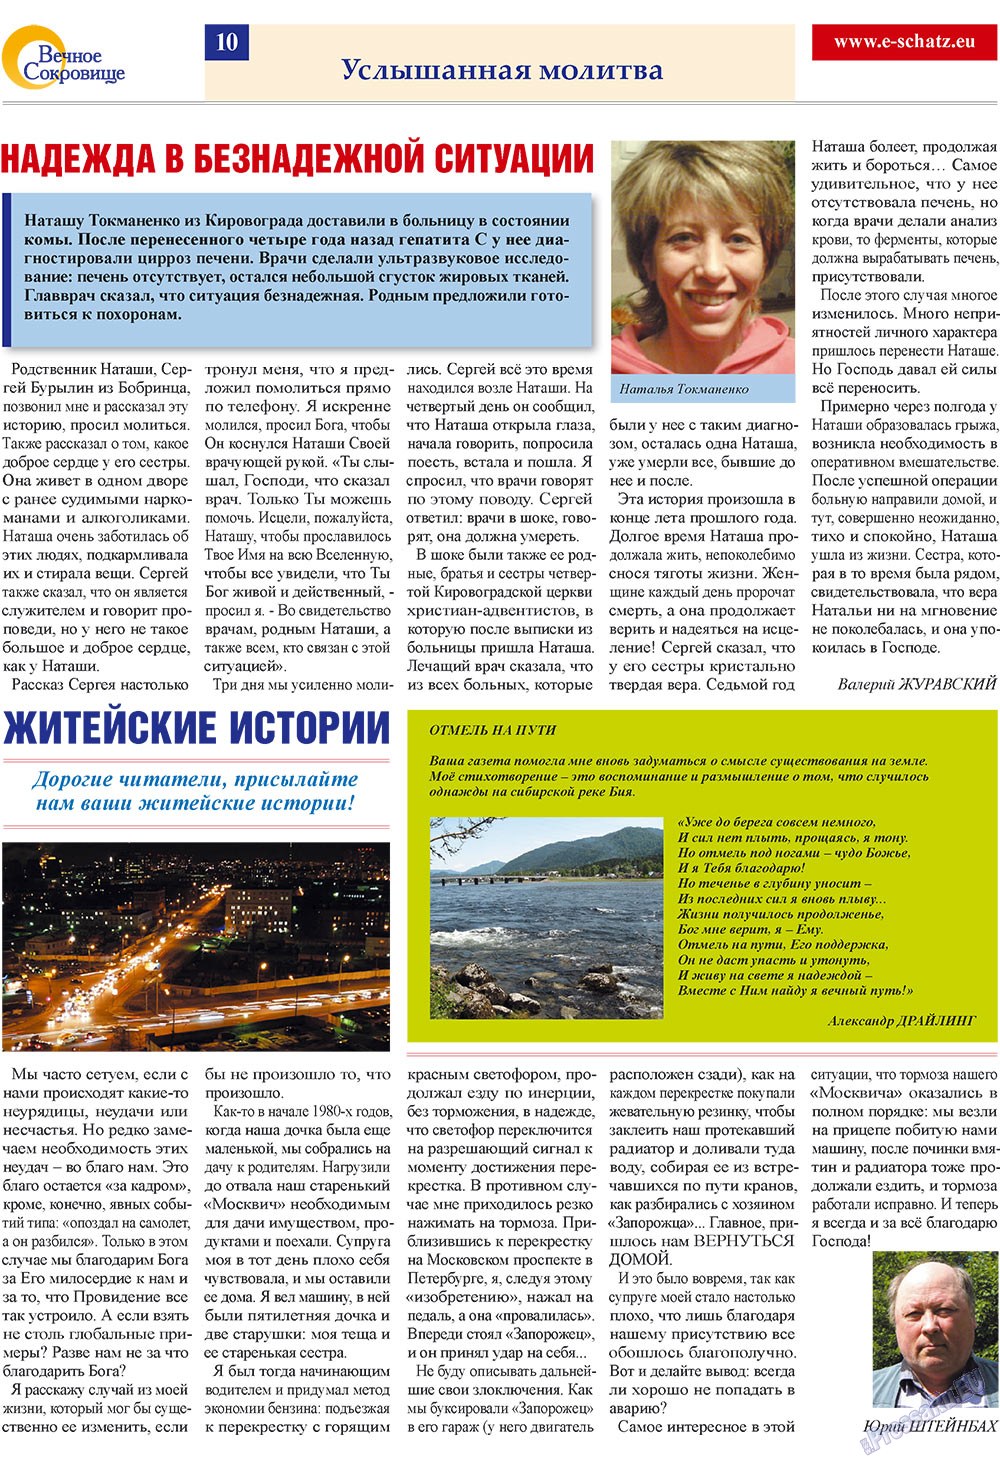 Вечное сокровище (газета). 2009 год, номер 3, стр. 10